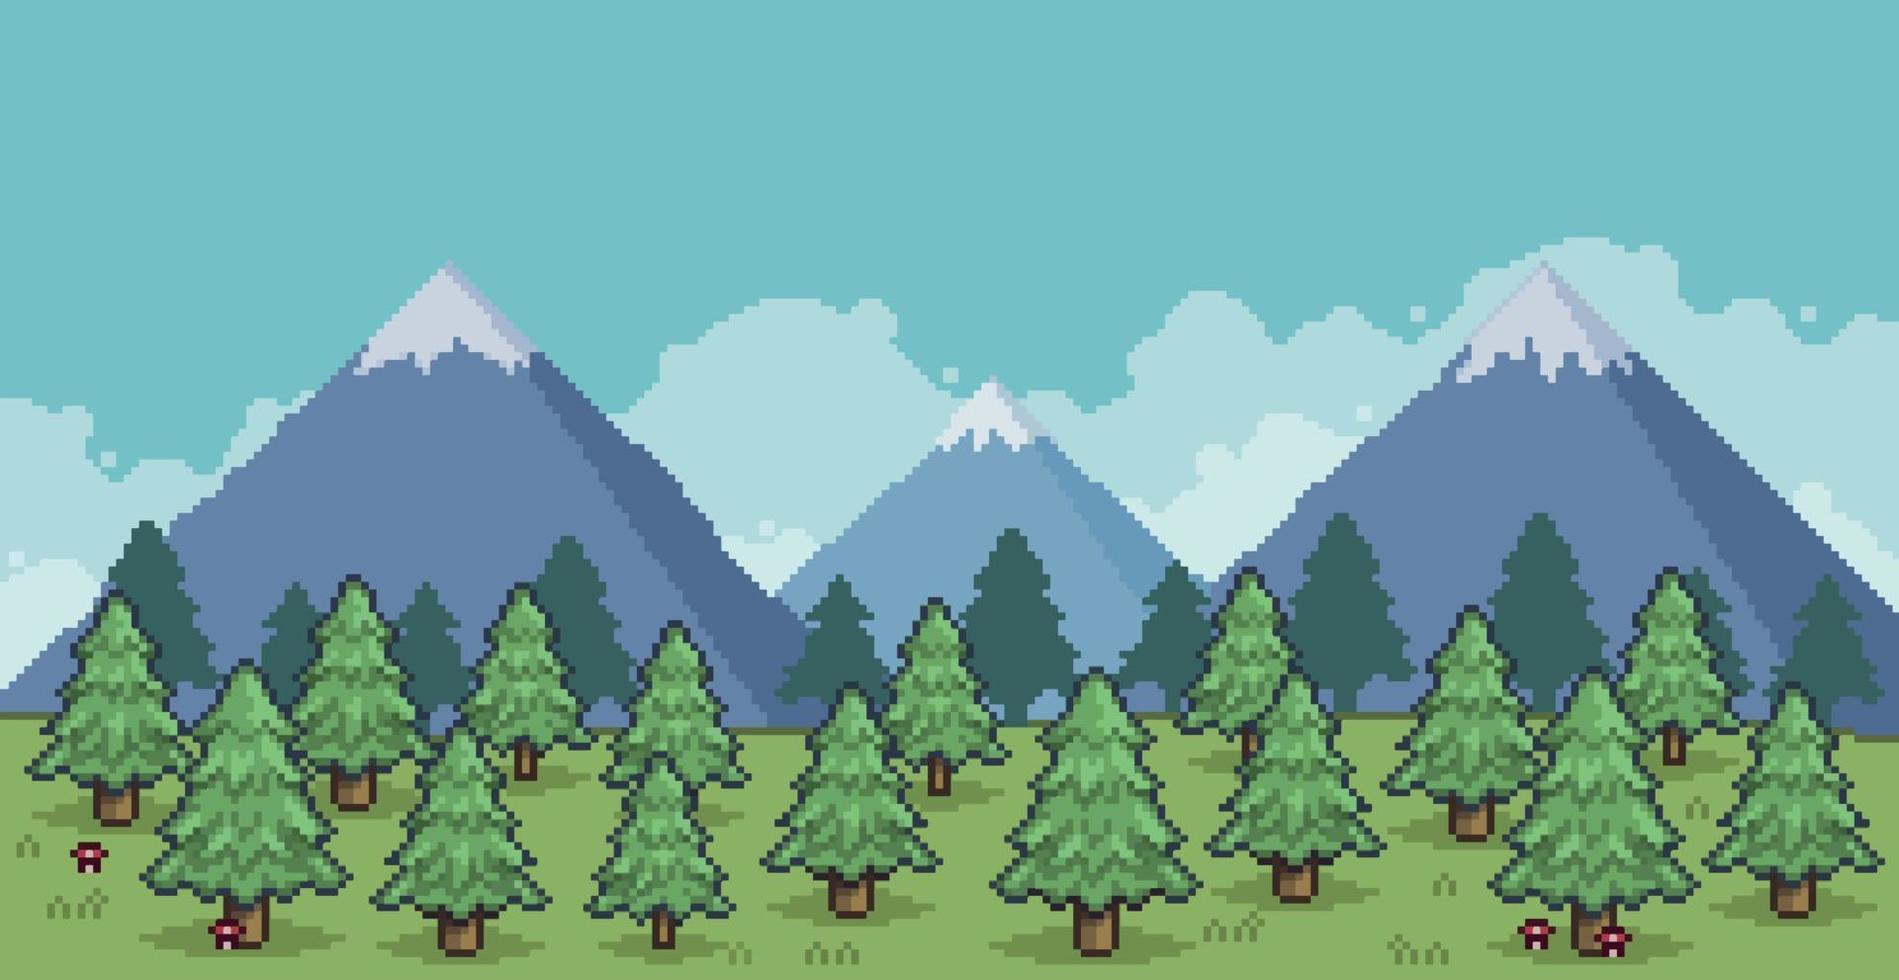 pixel konst landskap av tallskog i bergen 8 bitars vektor bakgrund